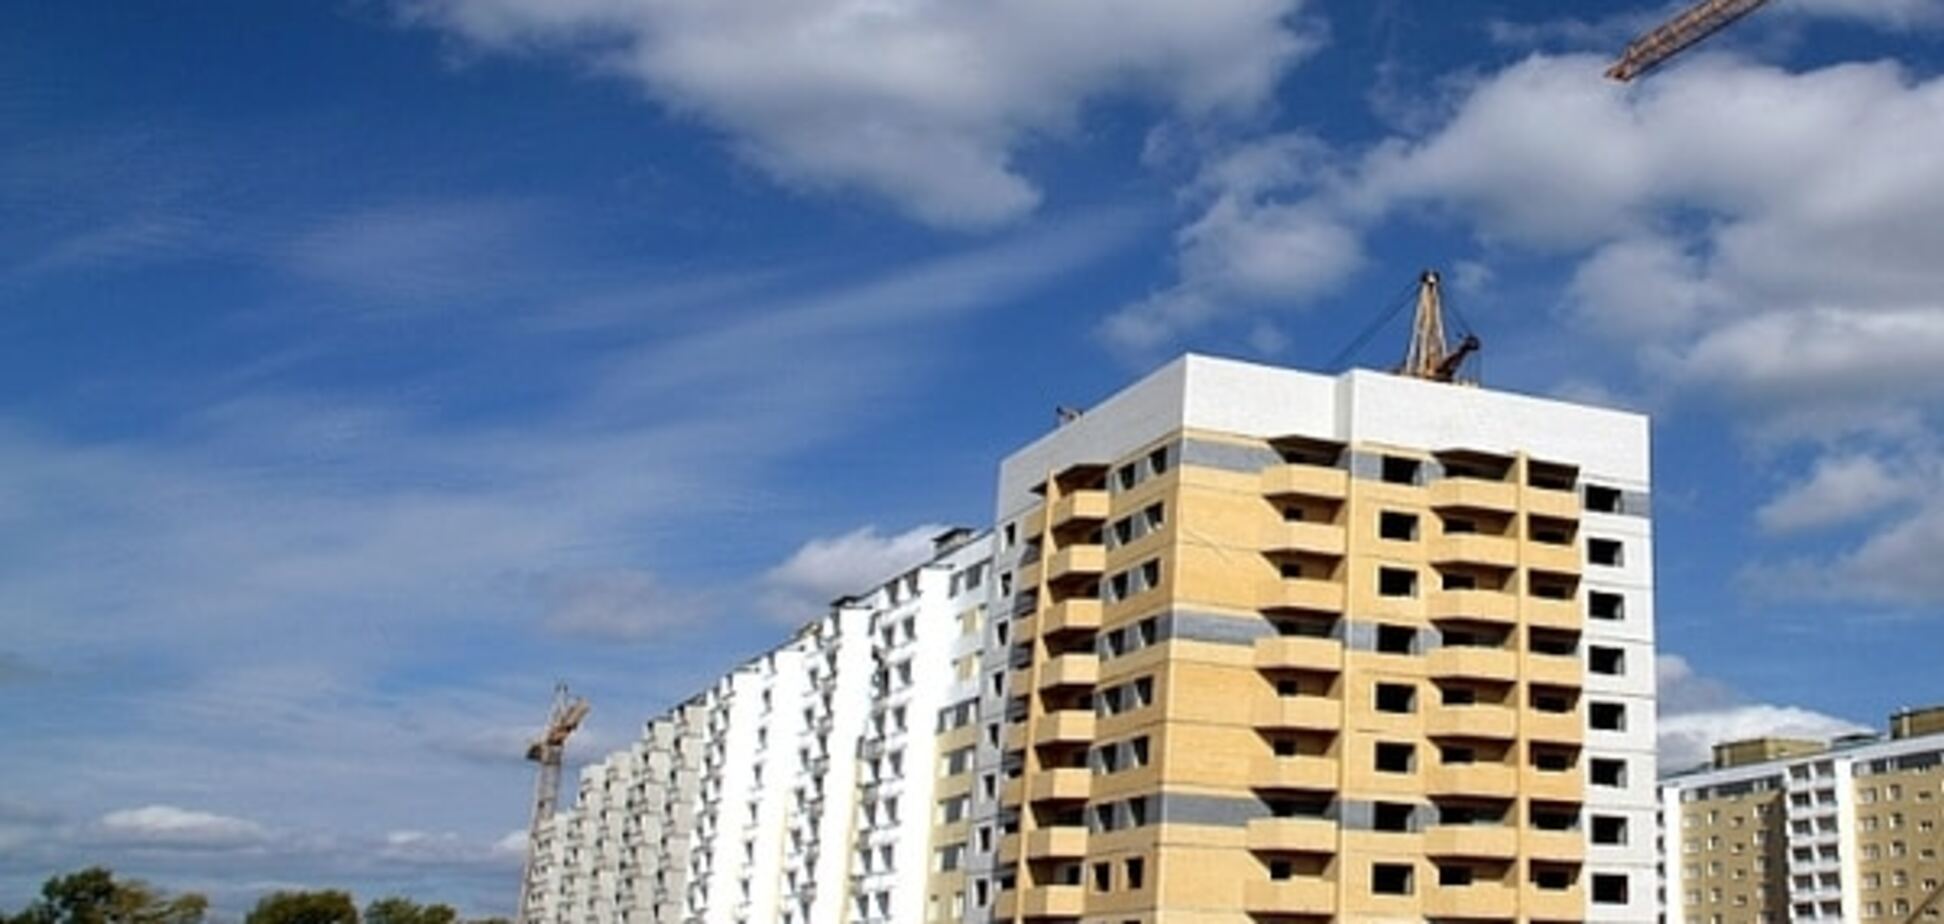 Квартплату жителей многоэтажек можно снизить на 10-20% - 'Наш край'